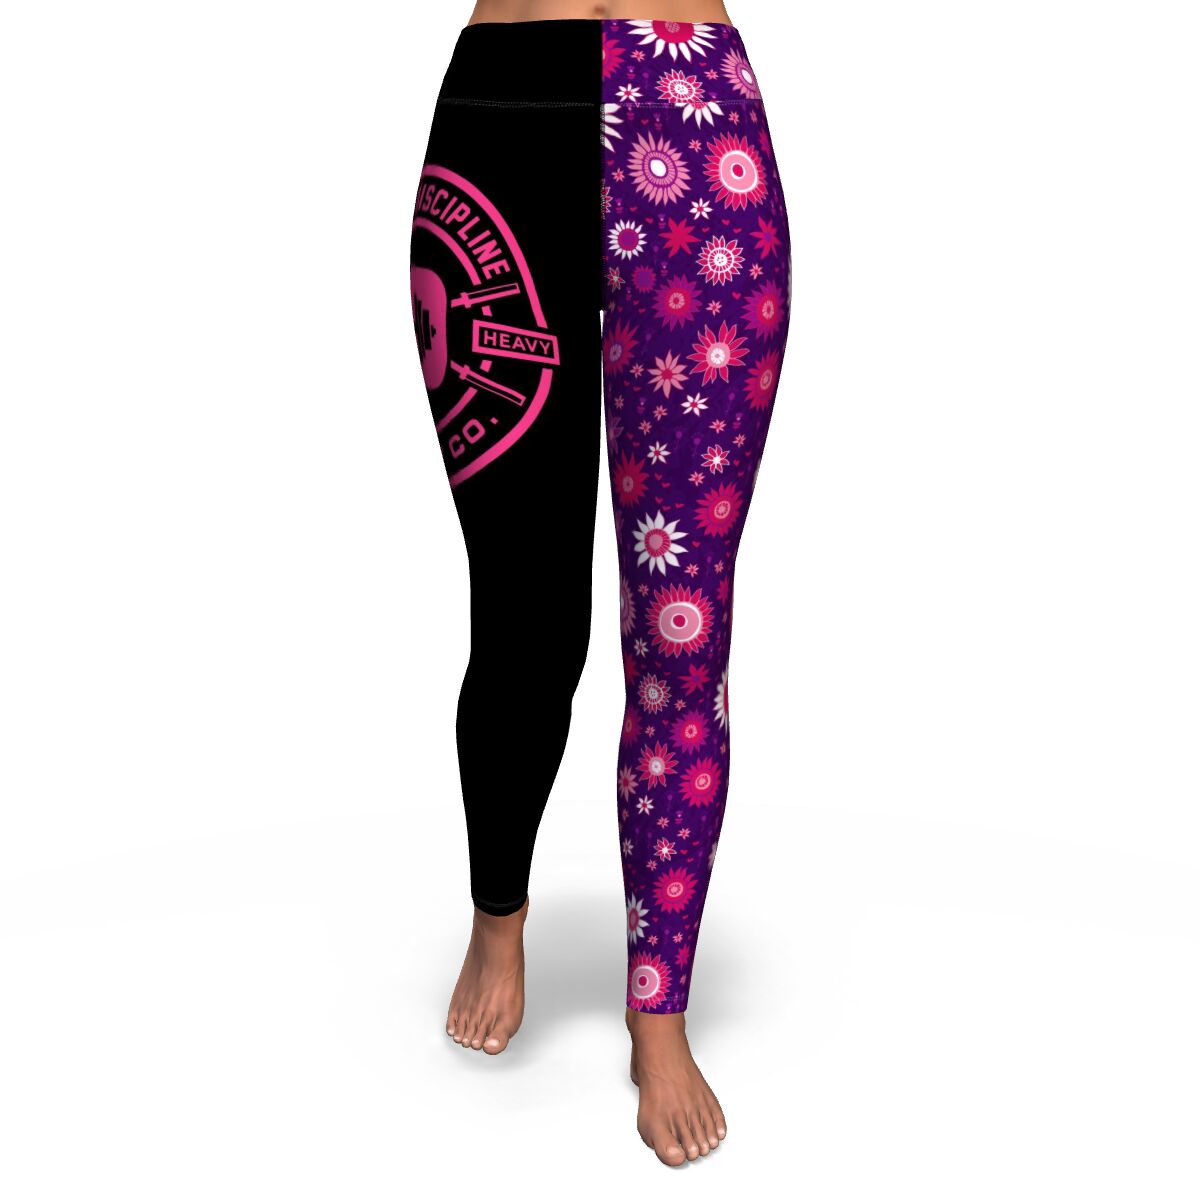 Women's Hot Pink Flower Power Yoga Fitness Leggings Front